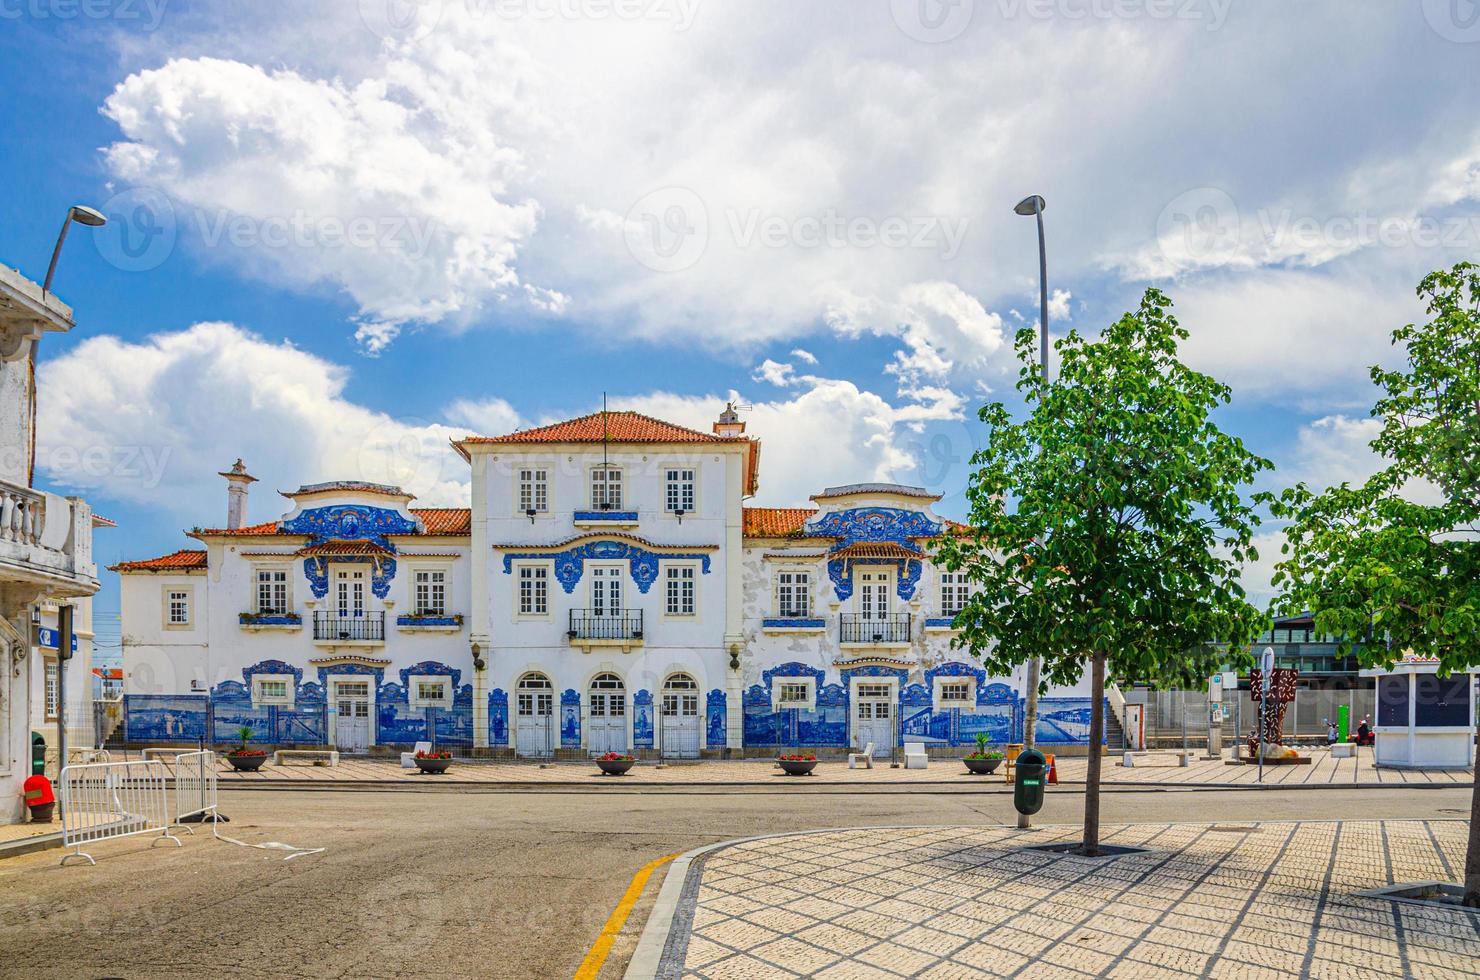 aveiro station, central järnväg azulejos-kaklad stationsbyggnad i centrum med gröna träd foto